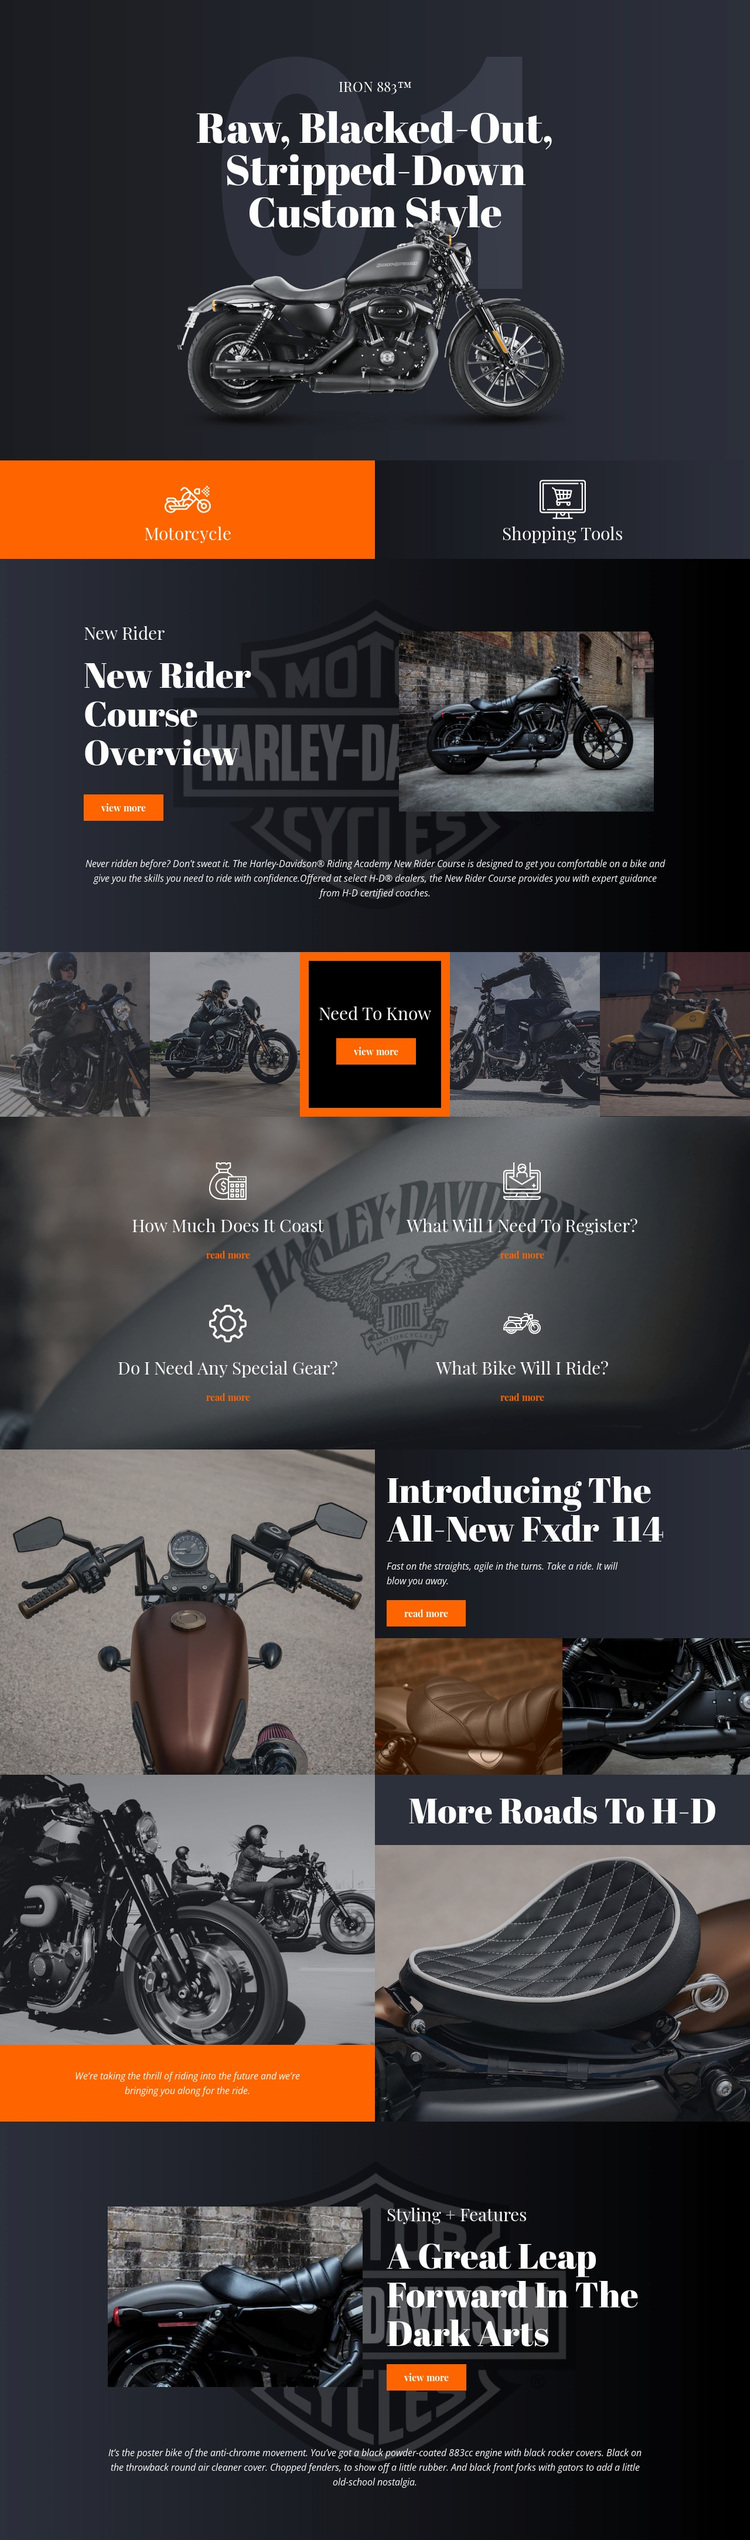 Harley Davidson Website Design